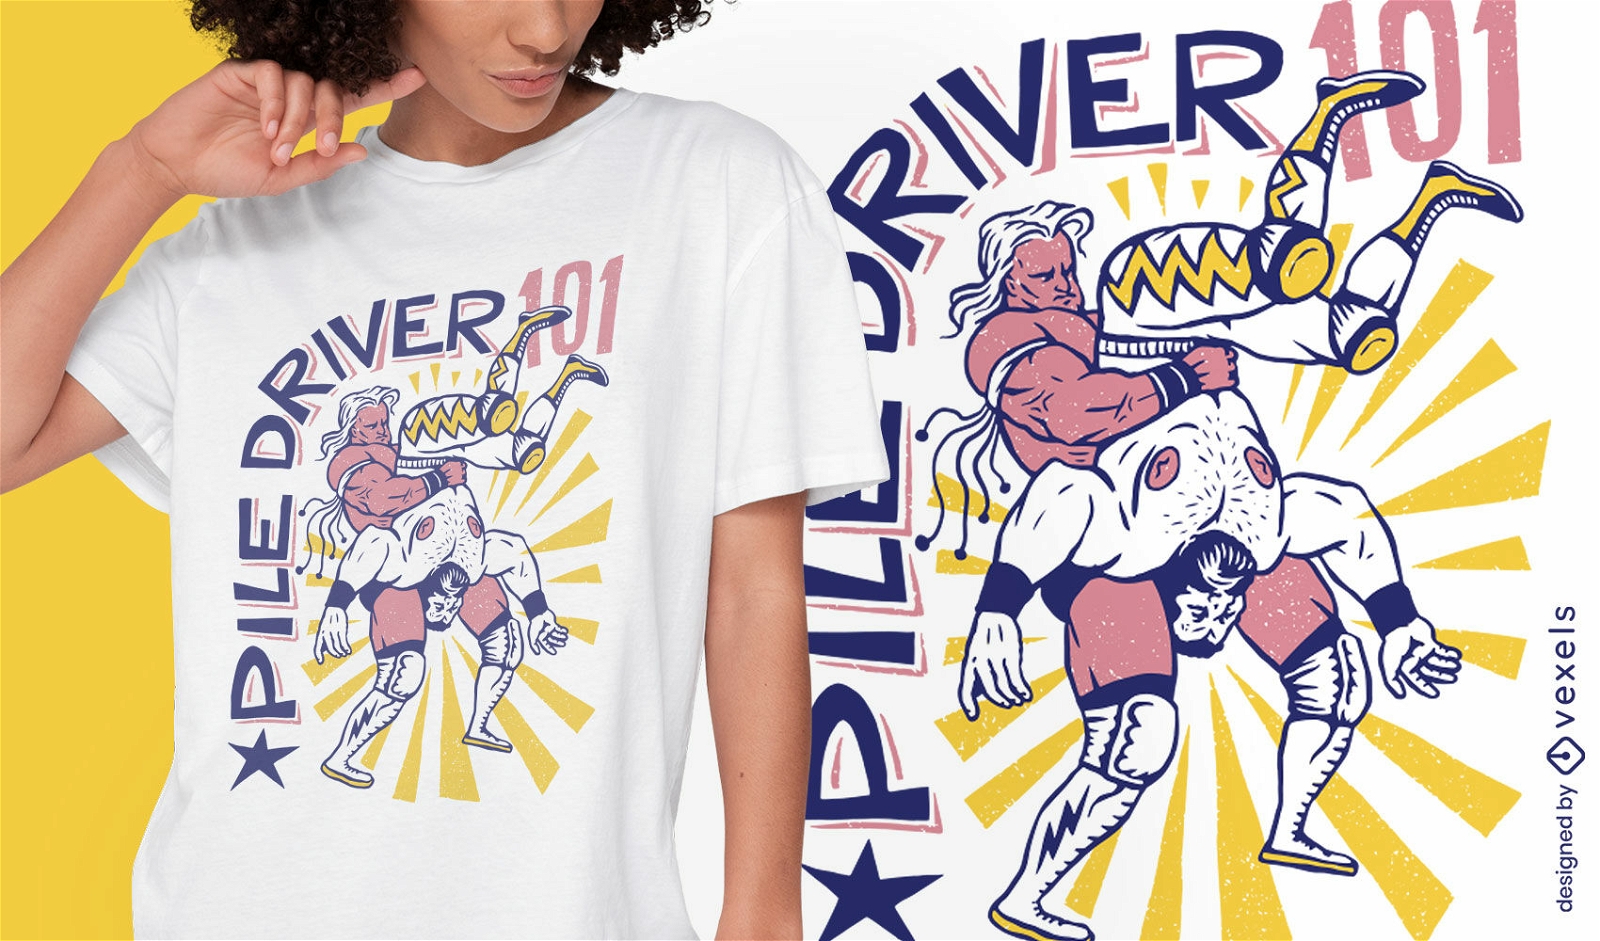 Piledriver-Wrestling-T-Shirt-Design